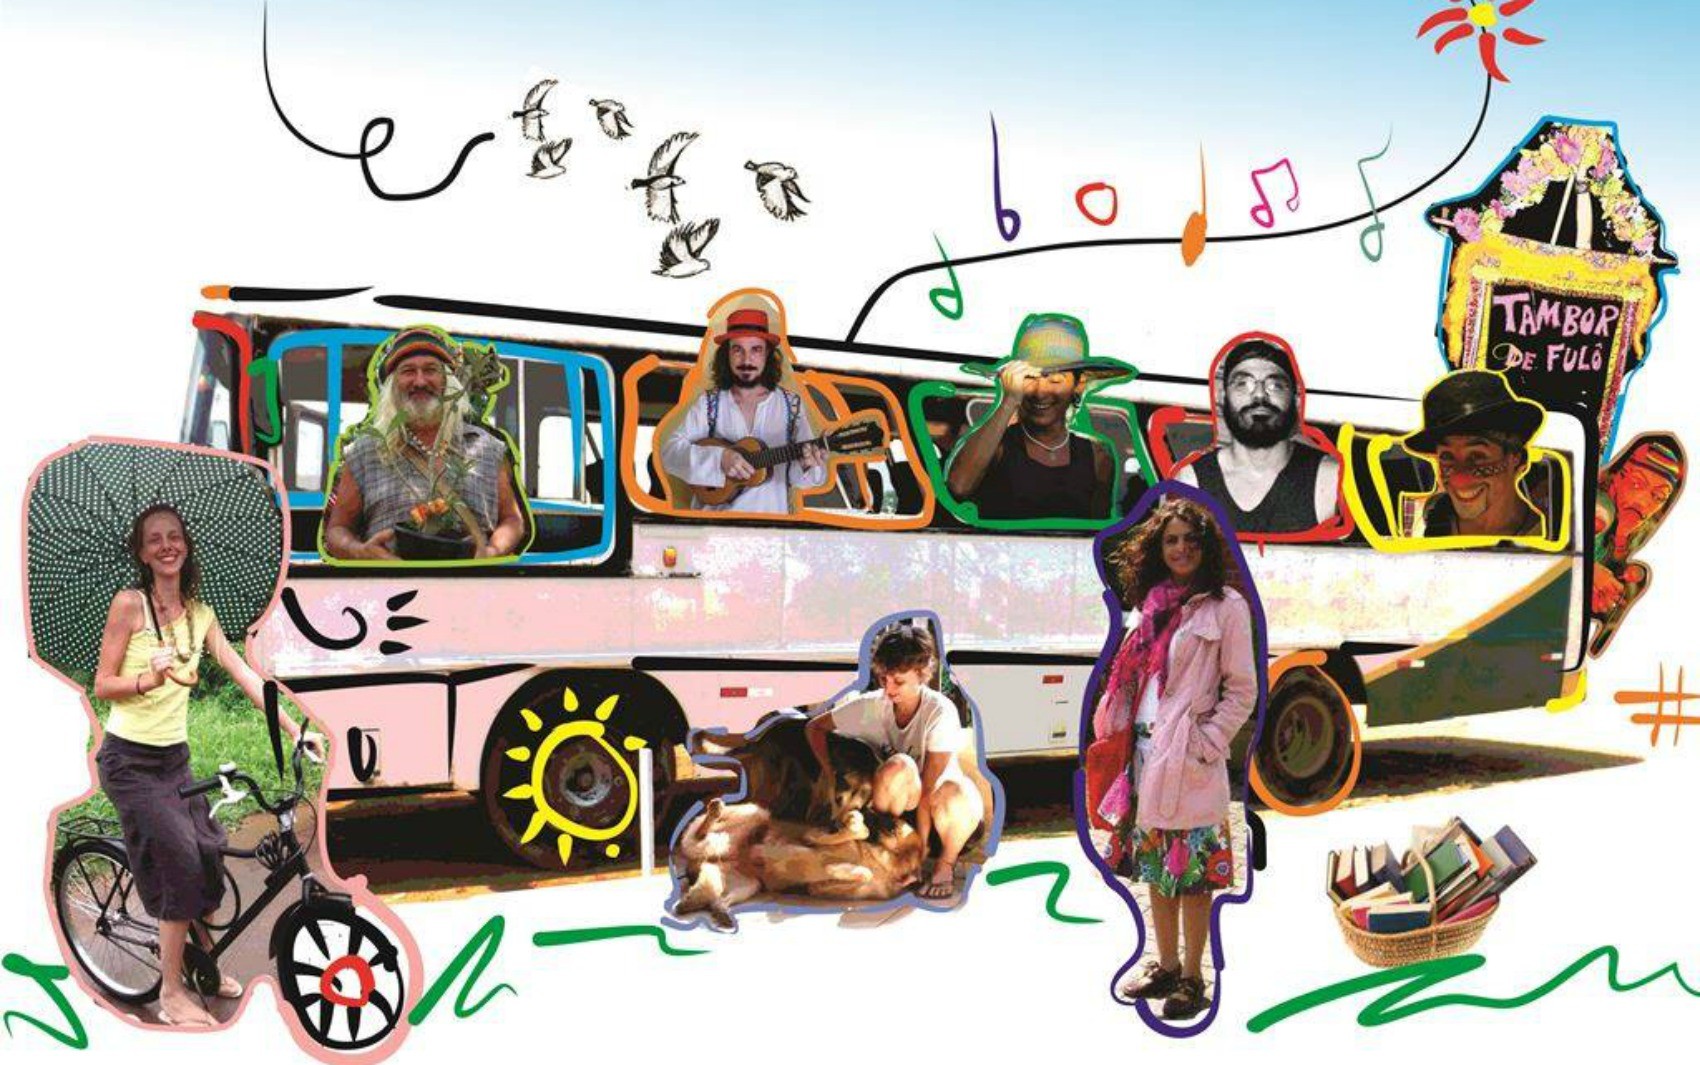 Artistas saem em caravana no início de janeiro  (Foto: Divulgação)